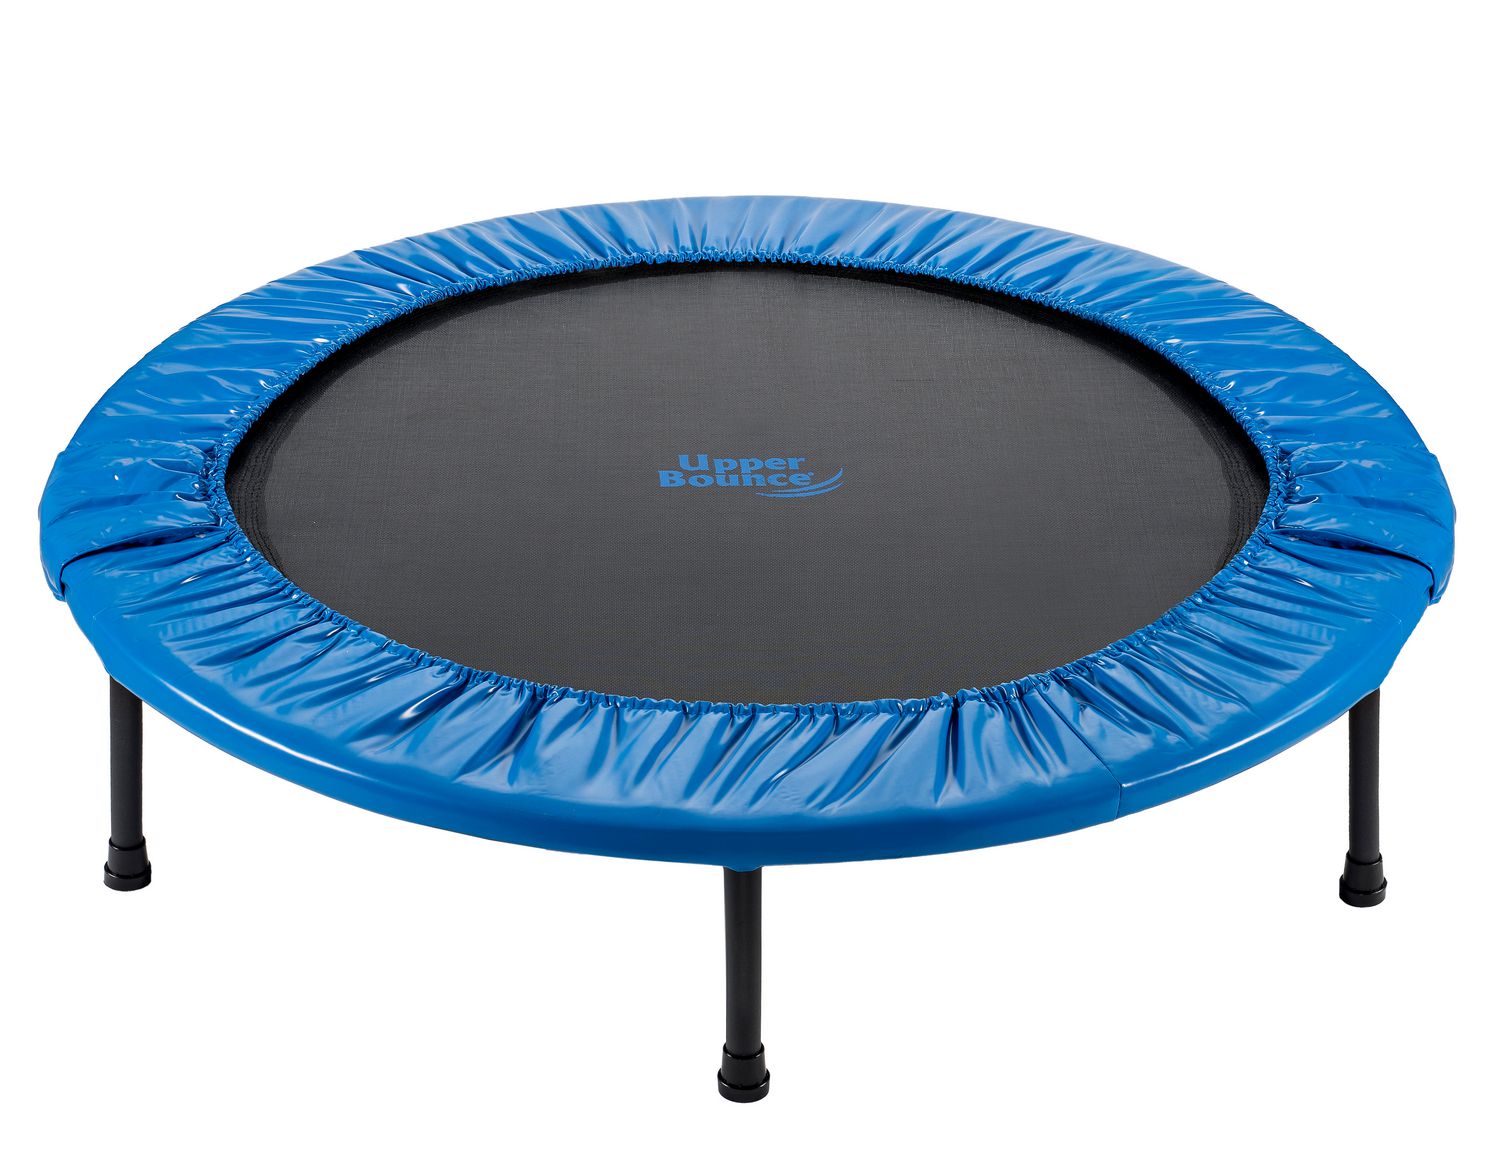 44/" Mini Fitness Saut Exercice Cardio Entraînement Pliable rebondeur trampoline